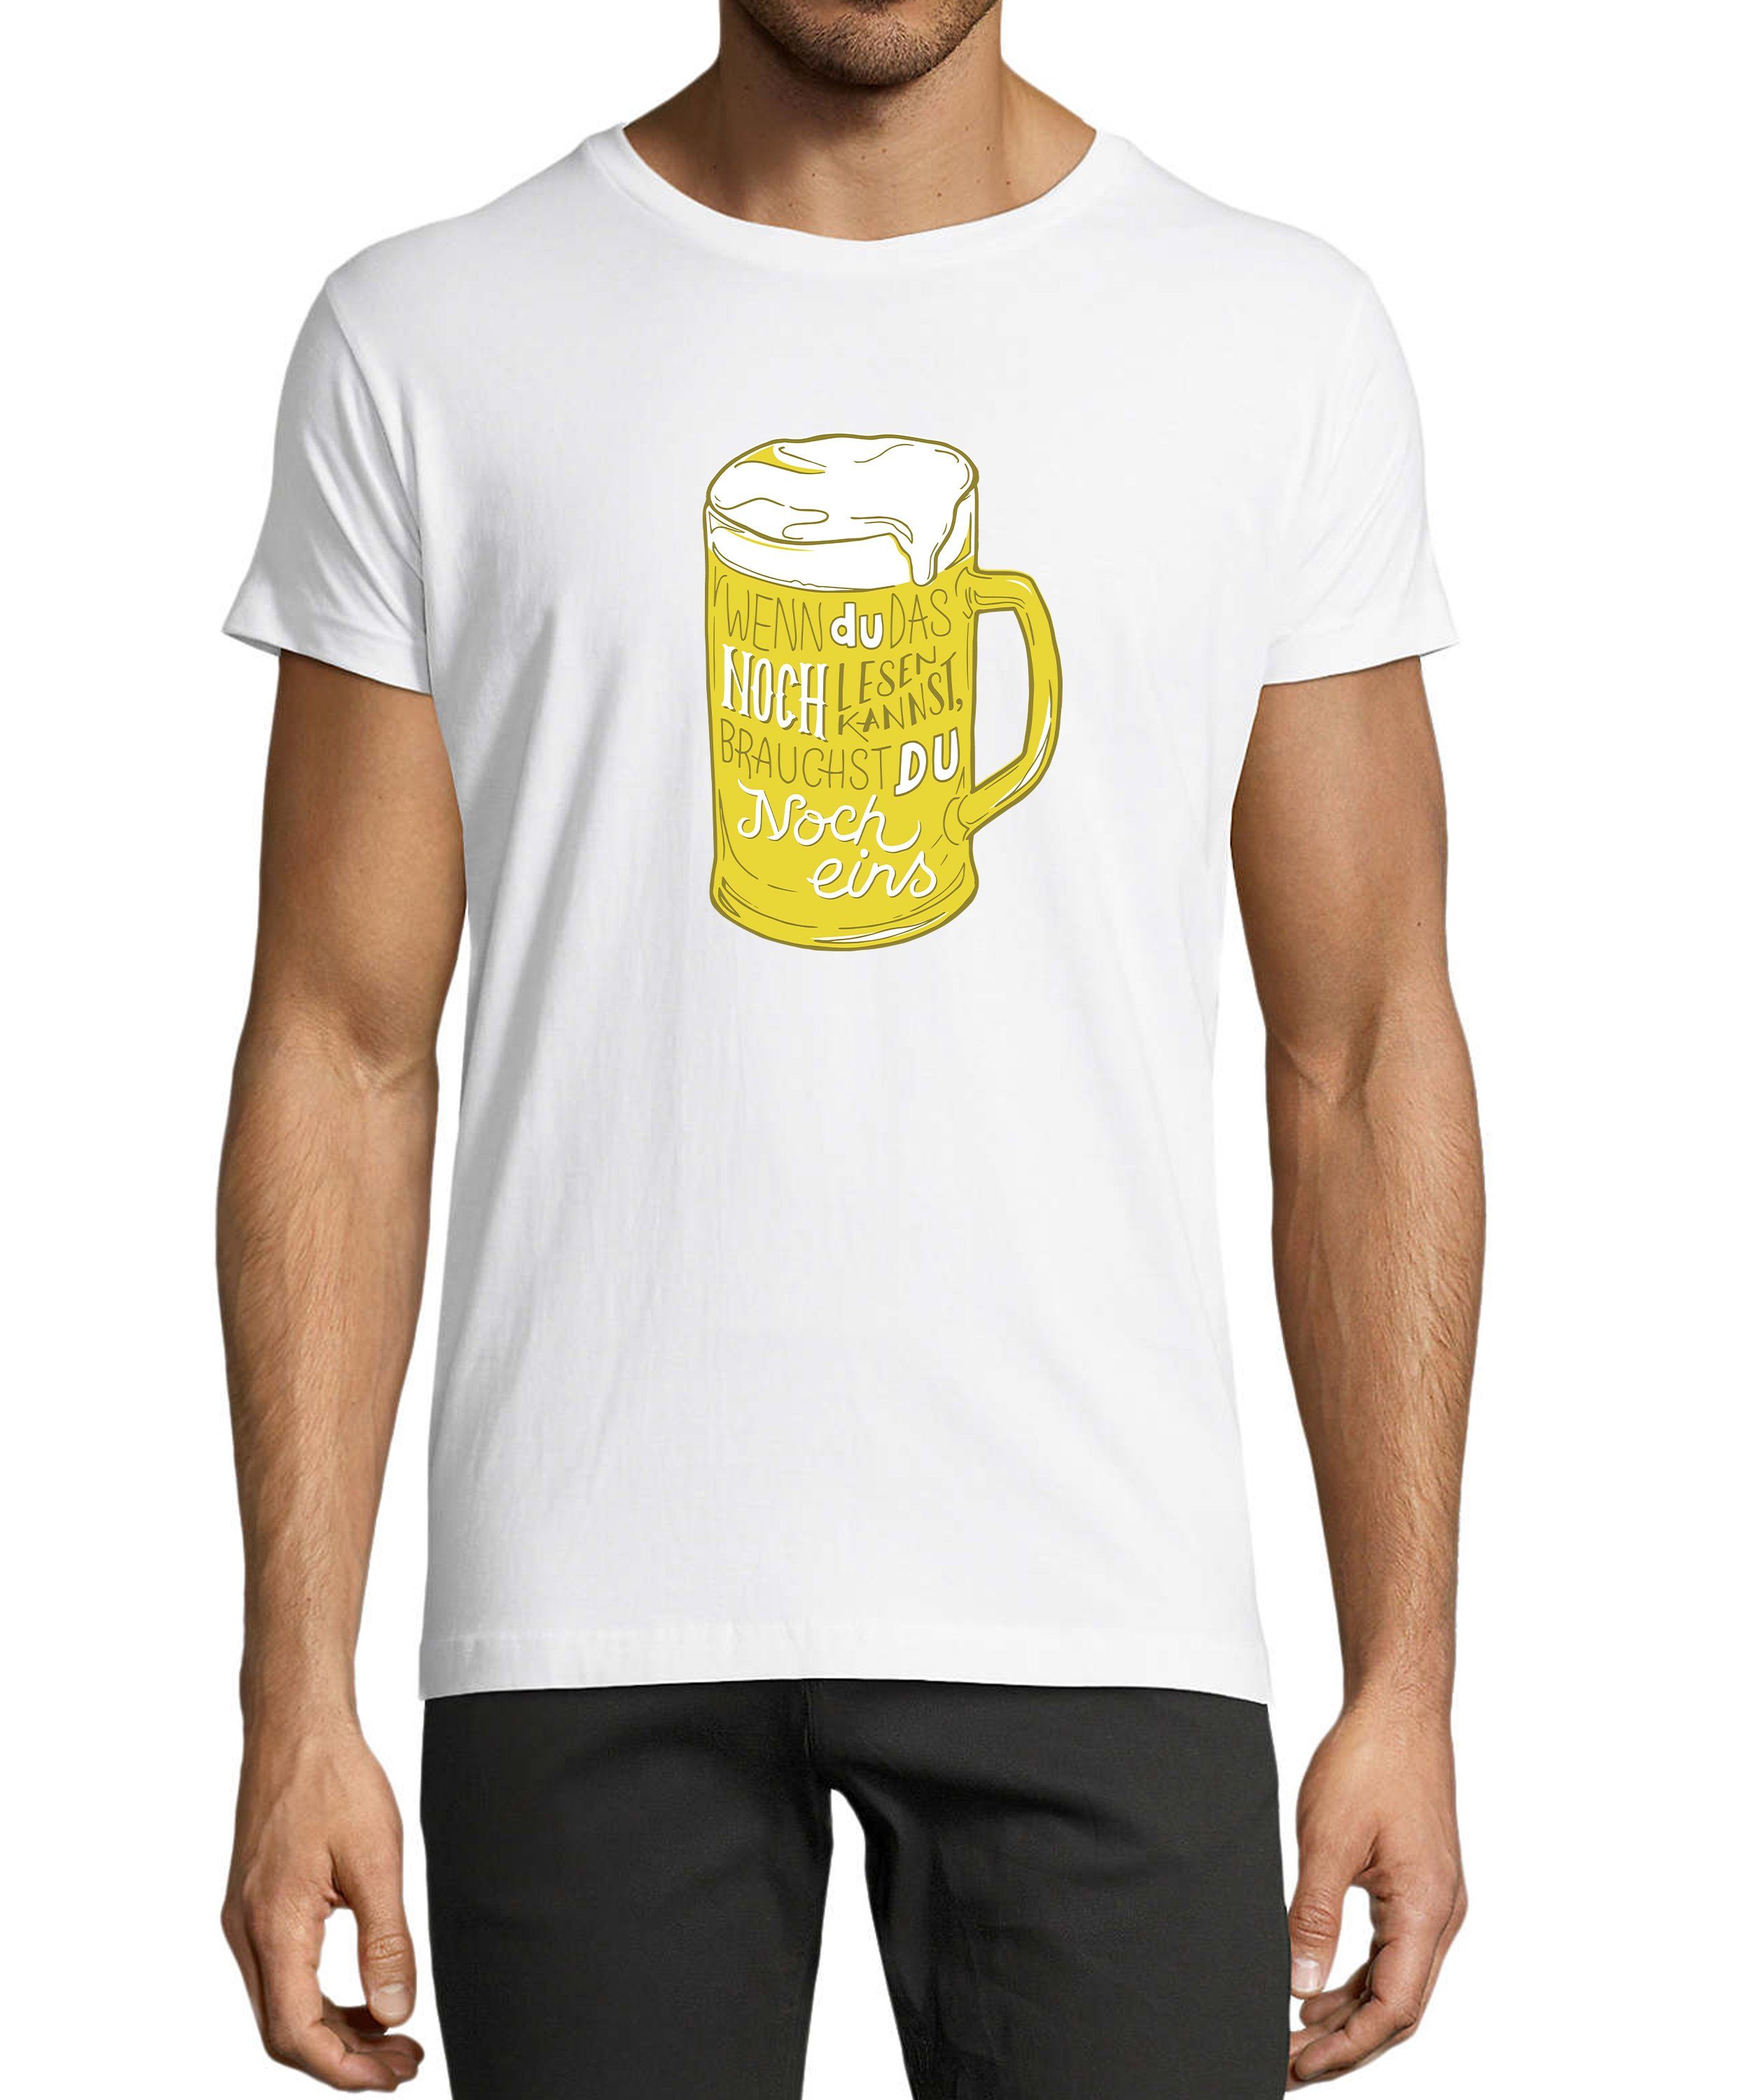 Baumwollshirt mit T-Shirt weiss Shirt Aufdruck witzigem mit Herren Oktoberfest Spruch Fit, MyDesign24 Regular i310 Trinkshirt Print Fun -